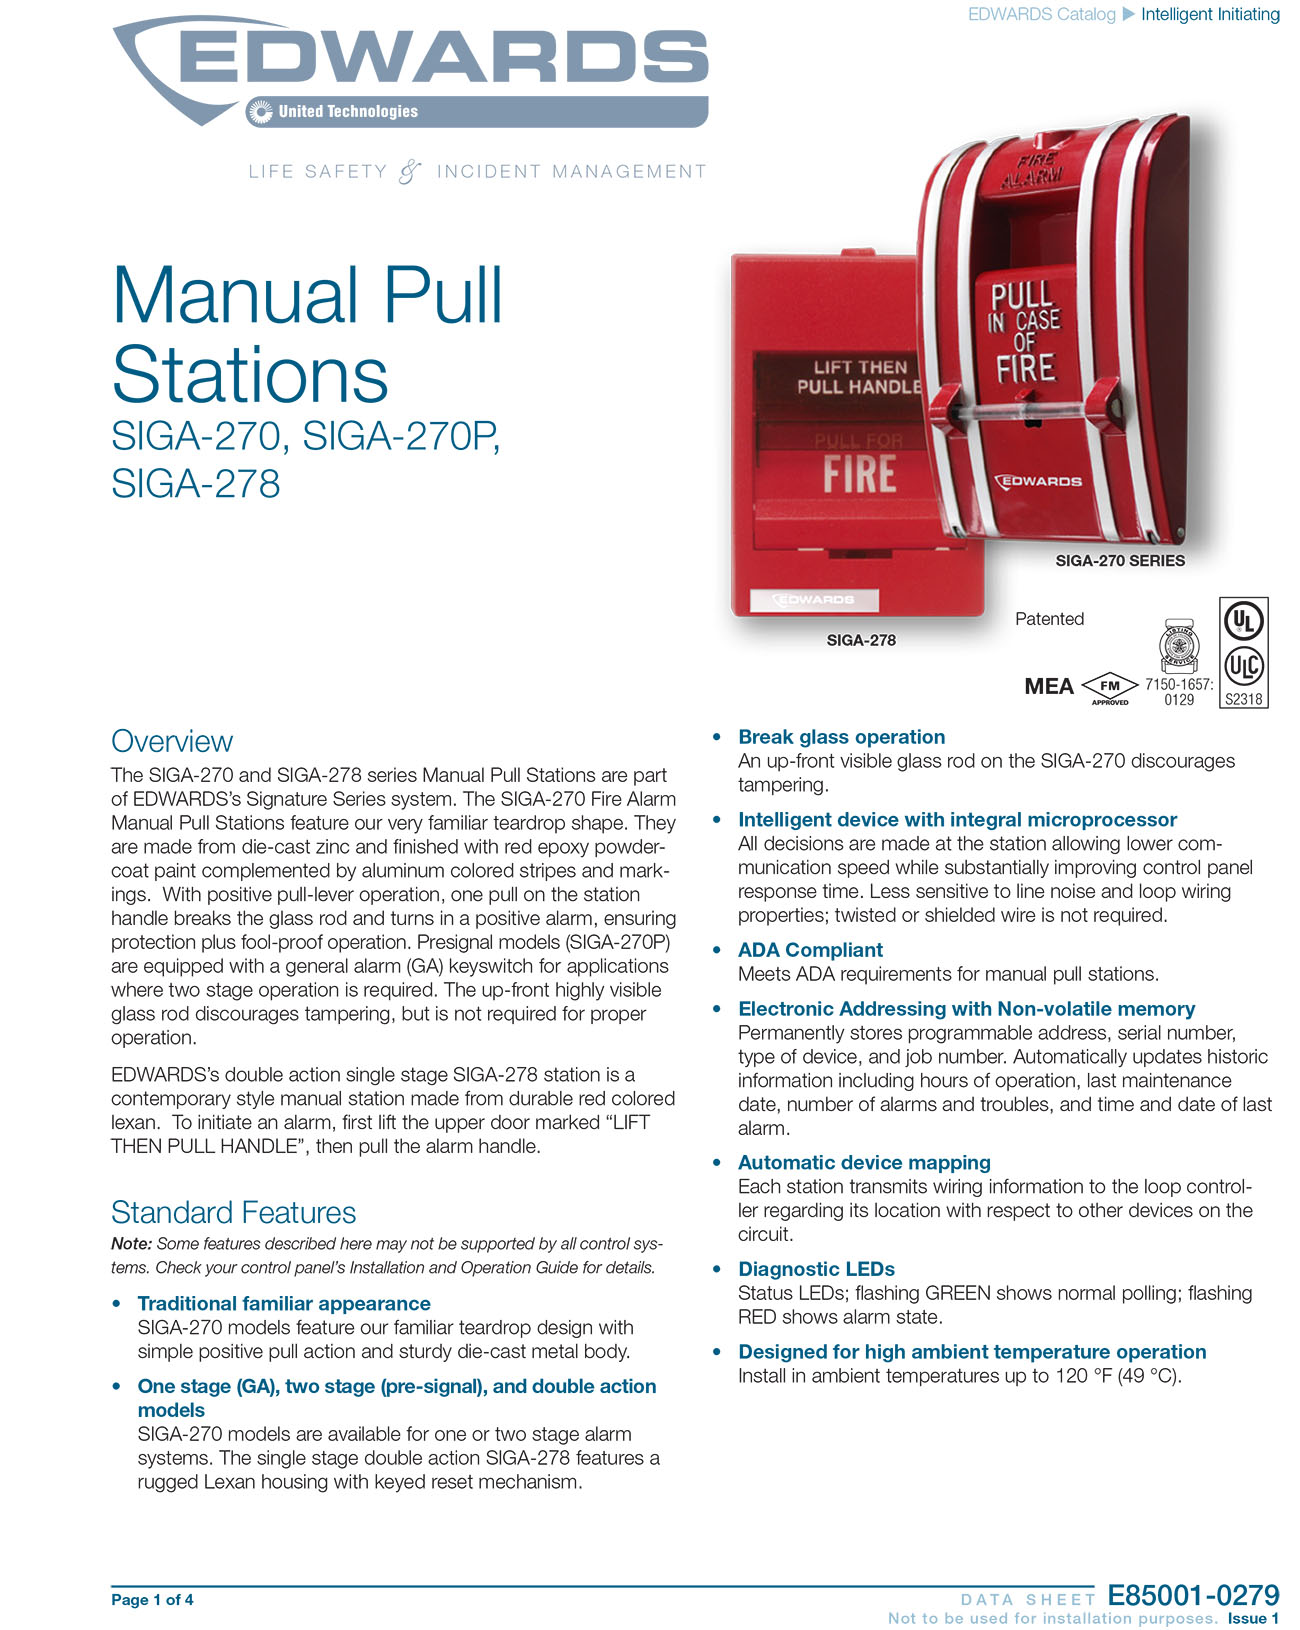 Manual Pull Stations SIGA-270, 270P, 278